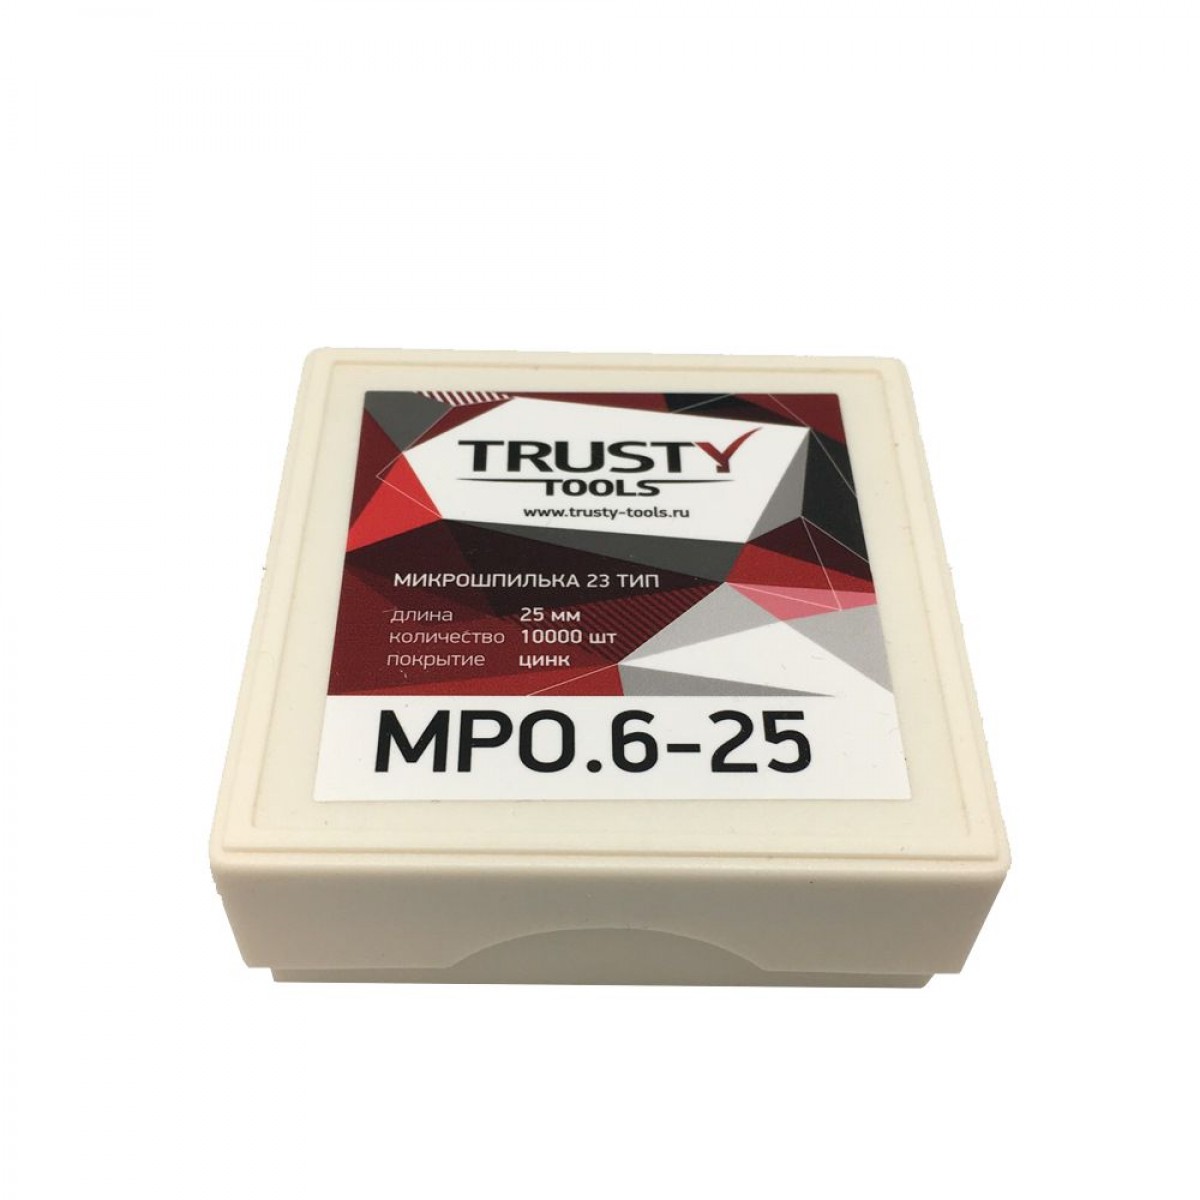 Микрошпилька Trusty 25 мм MPO.6-25 тип 23ga, 23, MP, SP, AL, 10000 шт